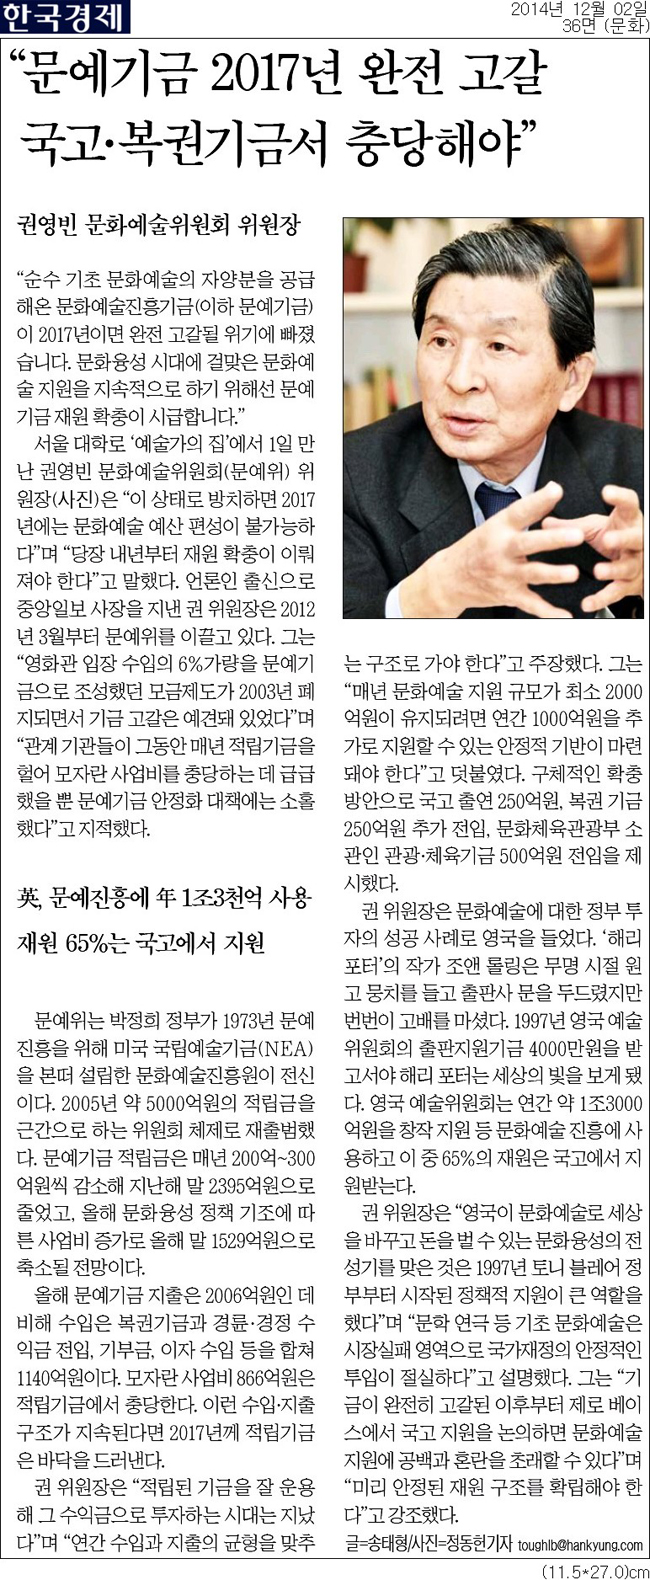 {한국경제] 2014년 12월 02일 36면 (문화)_문예기금 2017년 완전 고갈…국고·복권기금서 충당해야